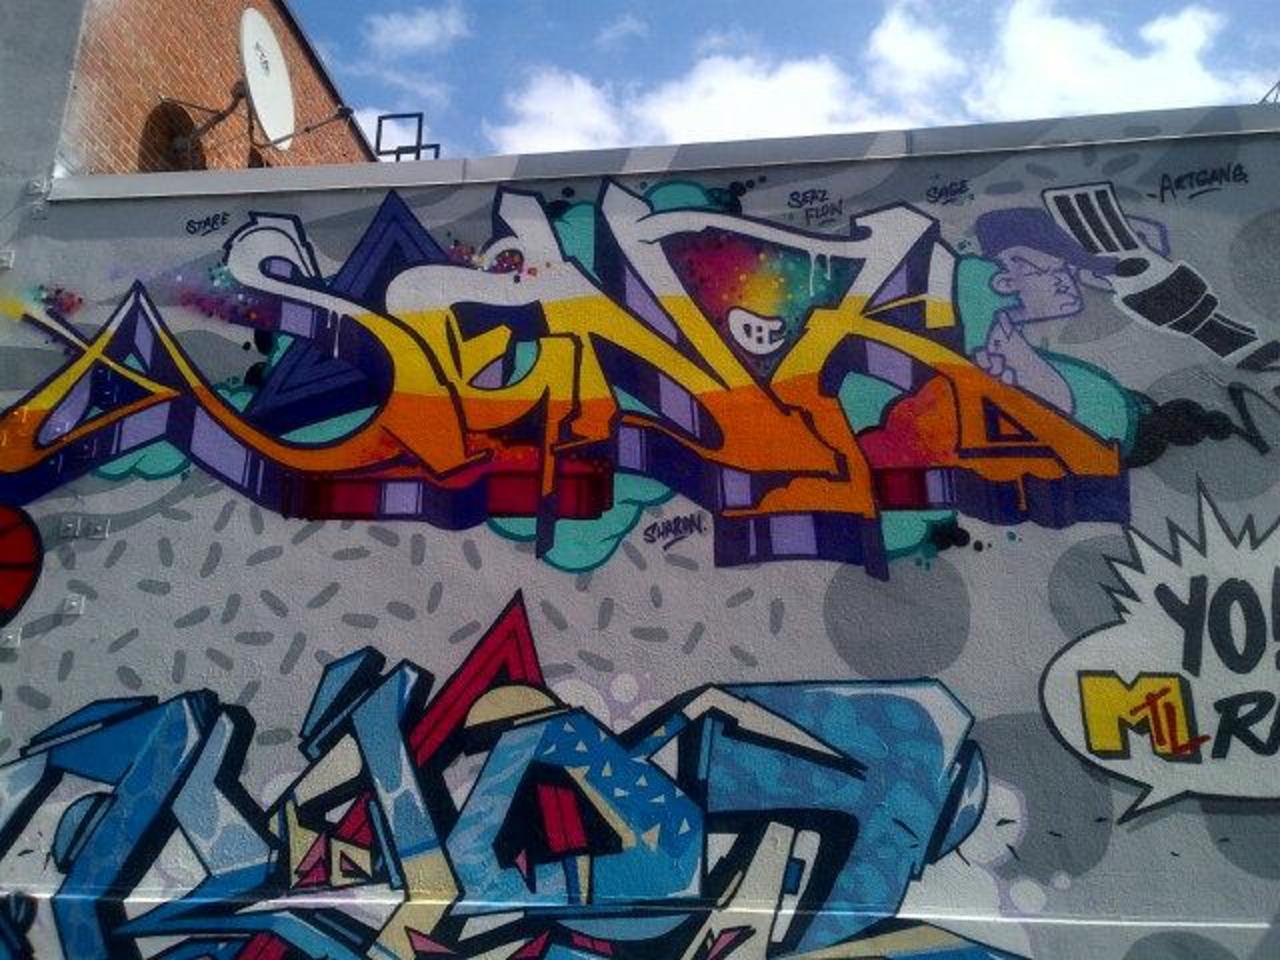 #GraffMtl #montreal #graffiti #streetart #ArtdeRue http://t.co/jqZUl9e7Mg